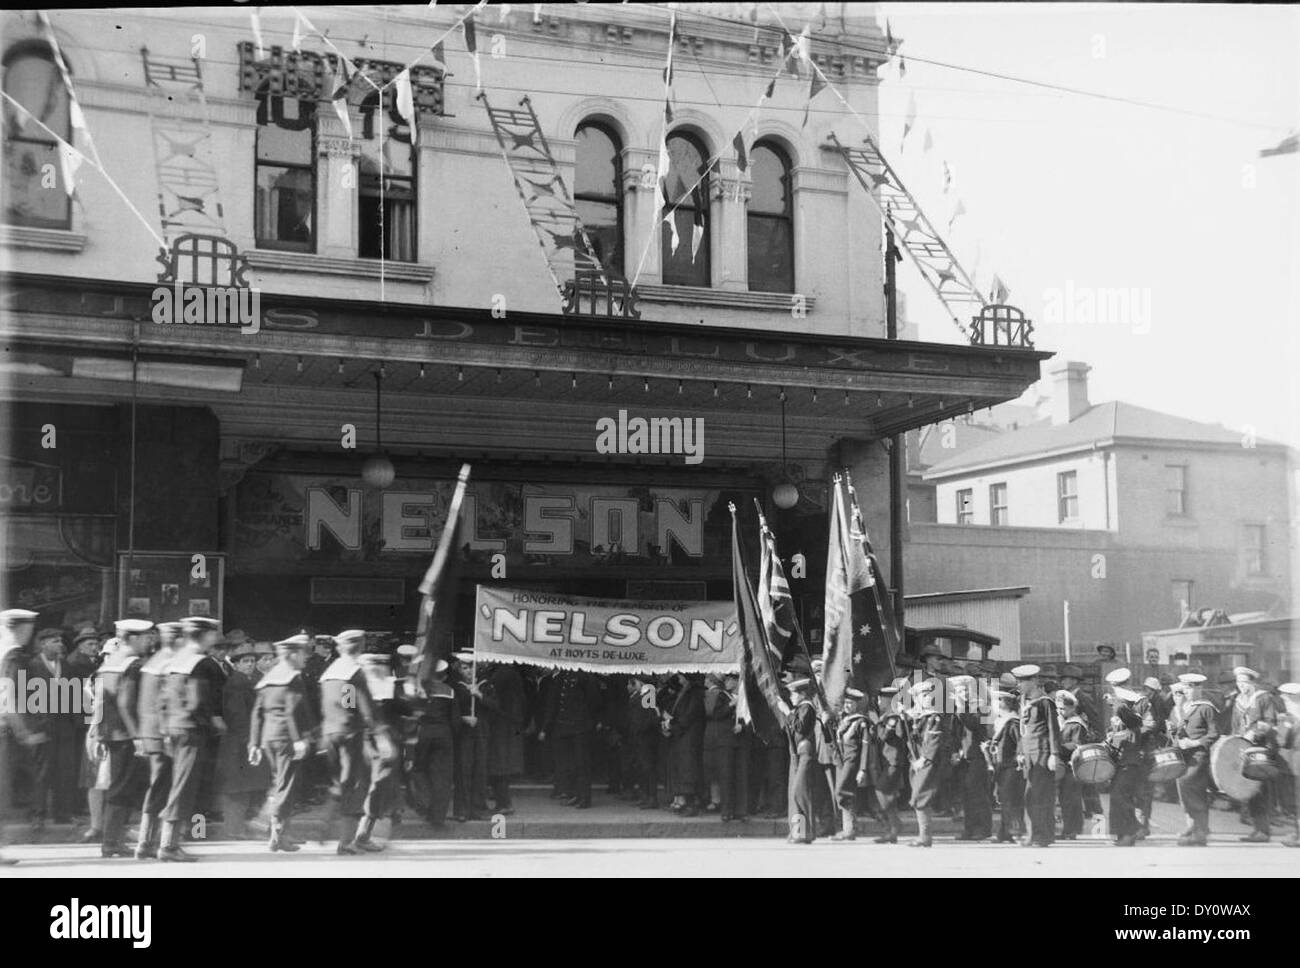 Les cadets de la Ligue navale en uniforme de mars de luxe hoyts cinema, George street, sydney pour le film 'nelson', 6 août 1928 / photographe sam hood Banque D'Images